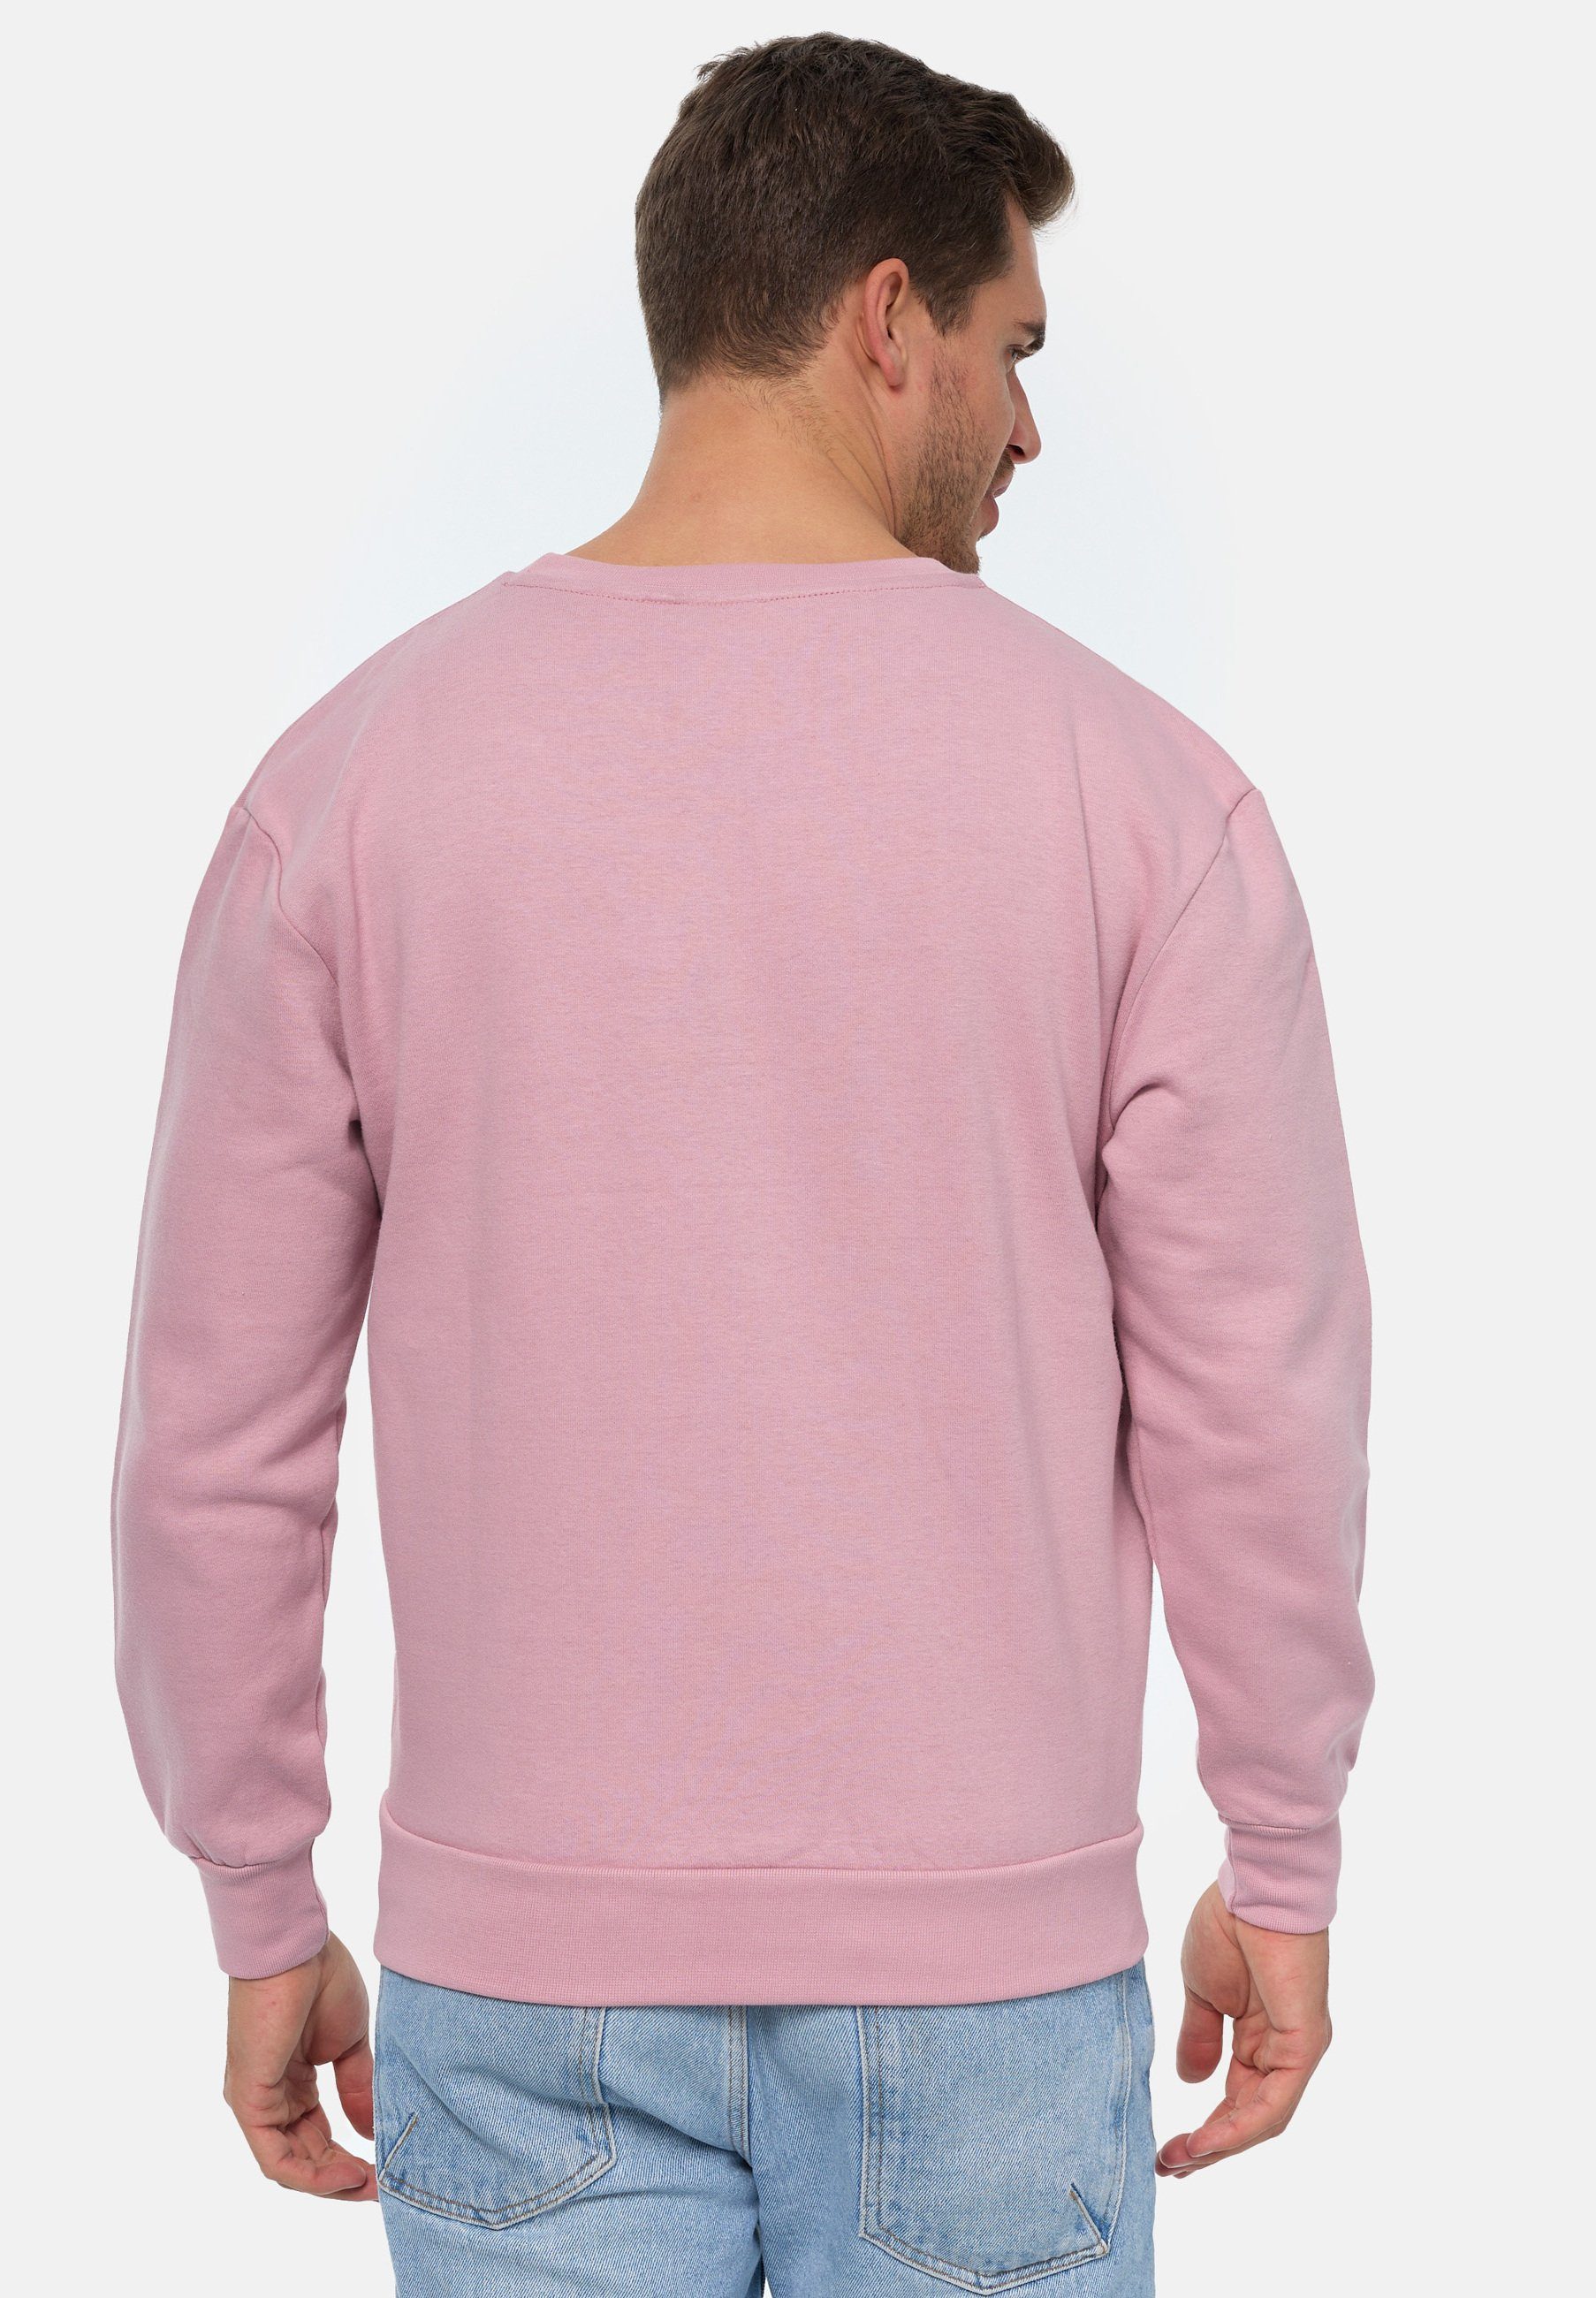 MIKON Sweatshirt Donut GOTS Pink zertifizierte Bio-Baumwolle